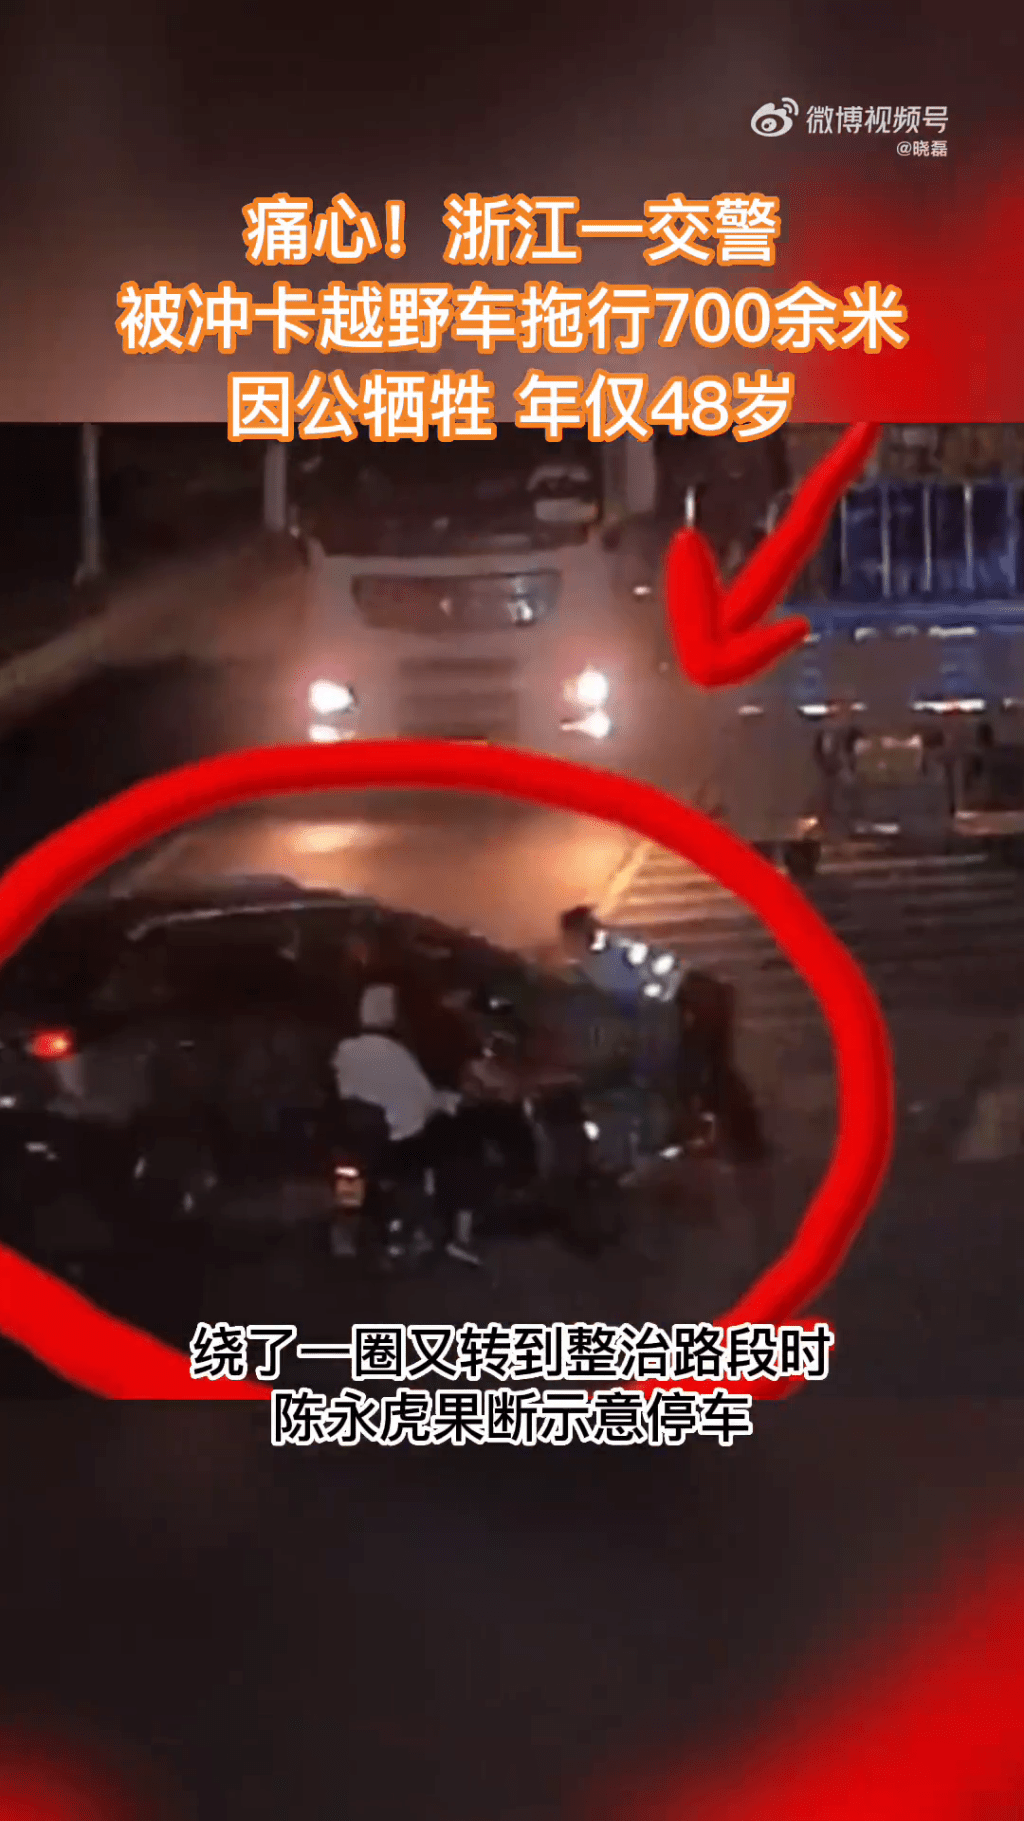 另一畫面顯示，陳永虎被頂上車前方的引擎蓋上被拖行的情況。